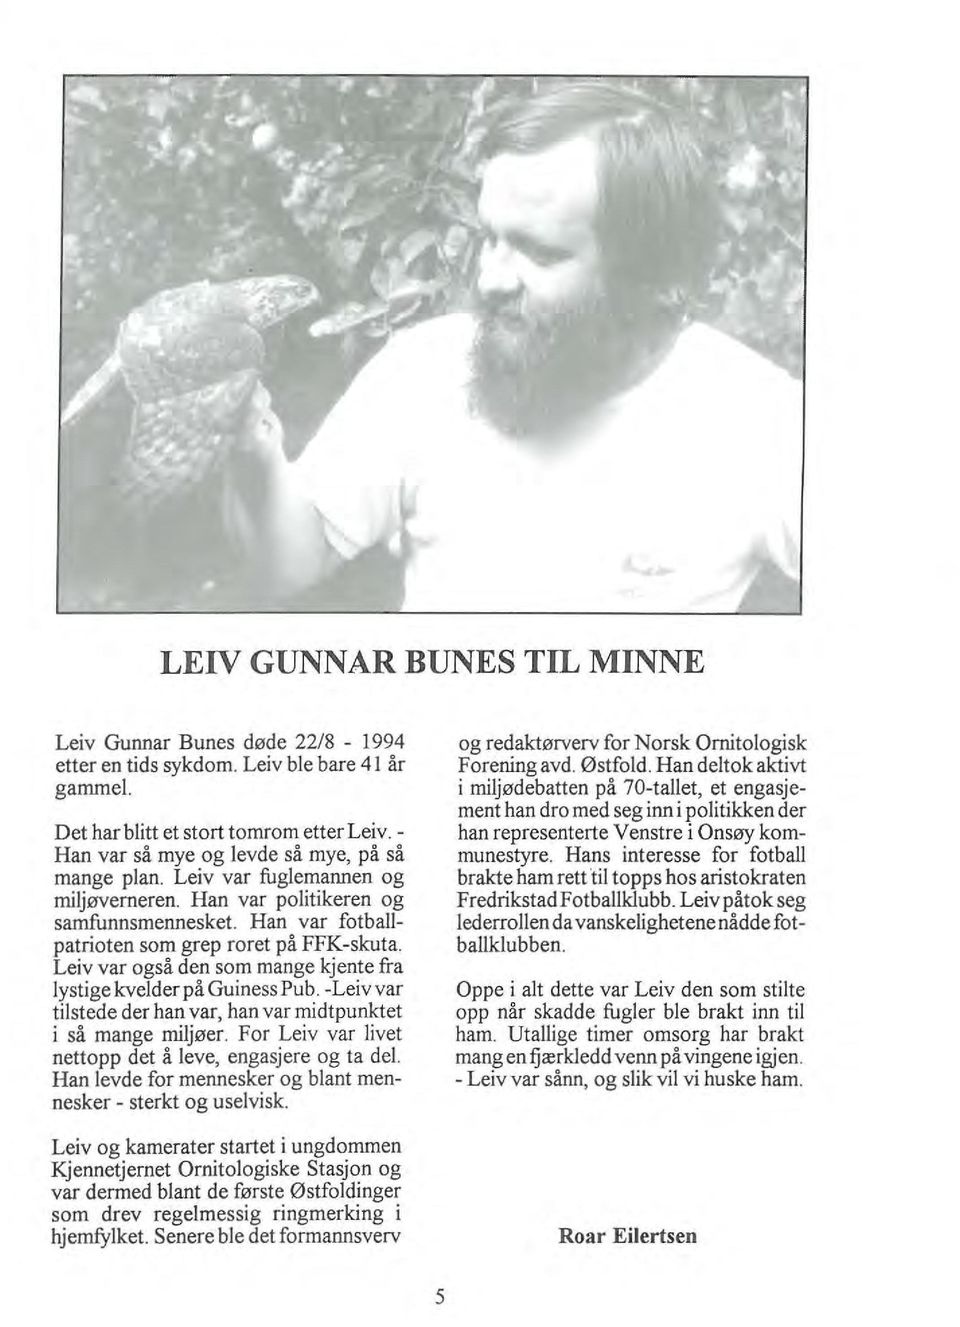 Leiv var også den som mange kjente fra lystige kvelder på Guiness Pub. -Leiv var tilstede der han var, han var midtpunktet i så mange miljøer.